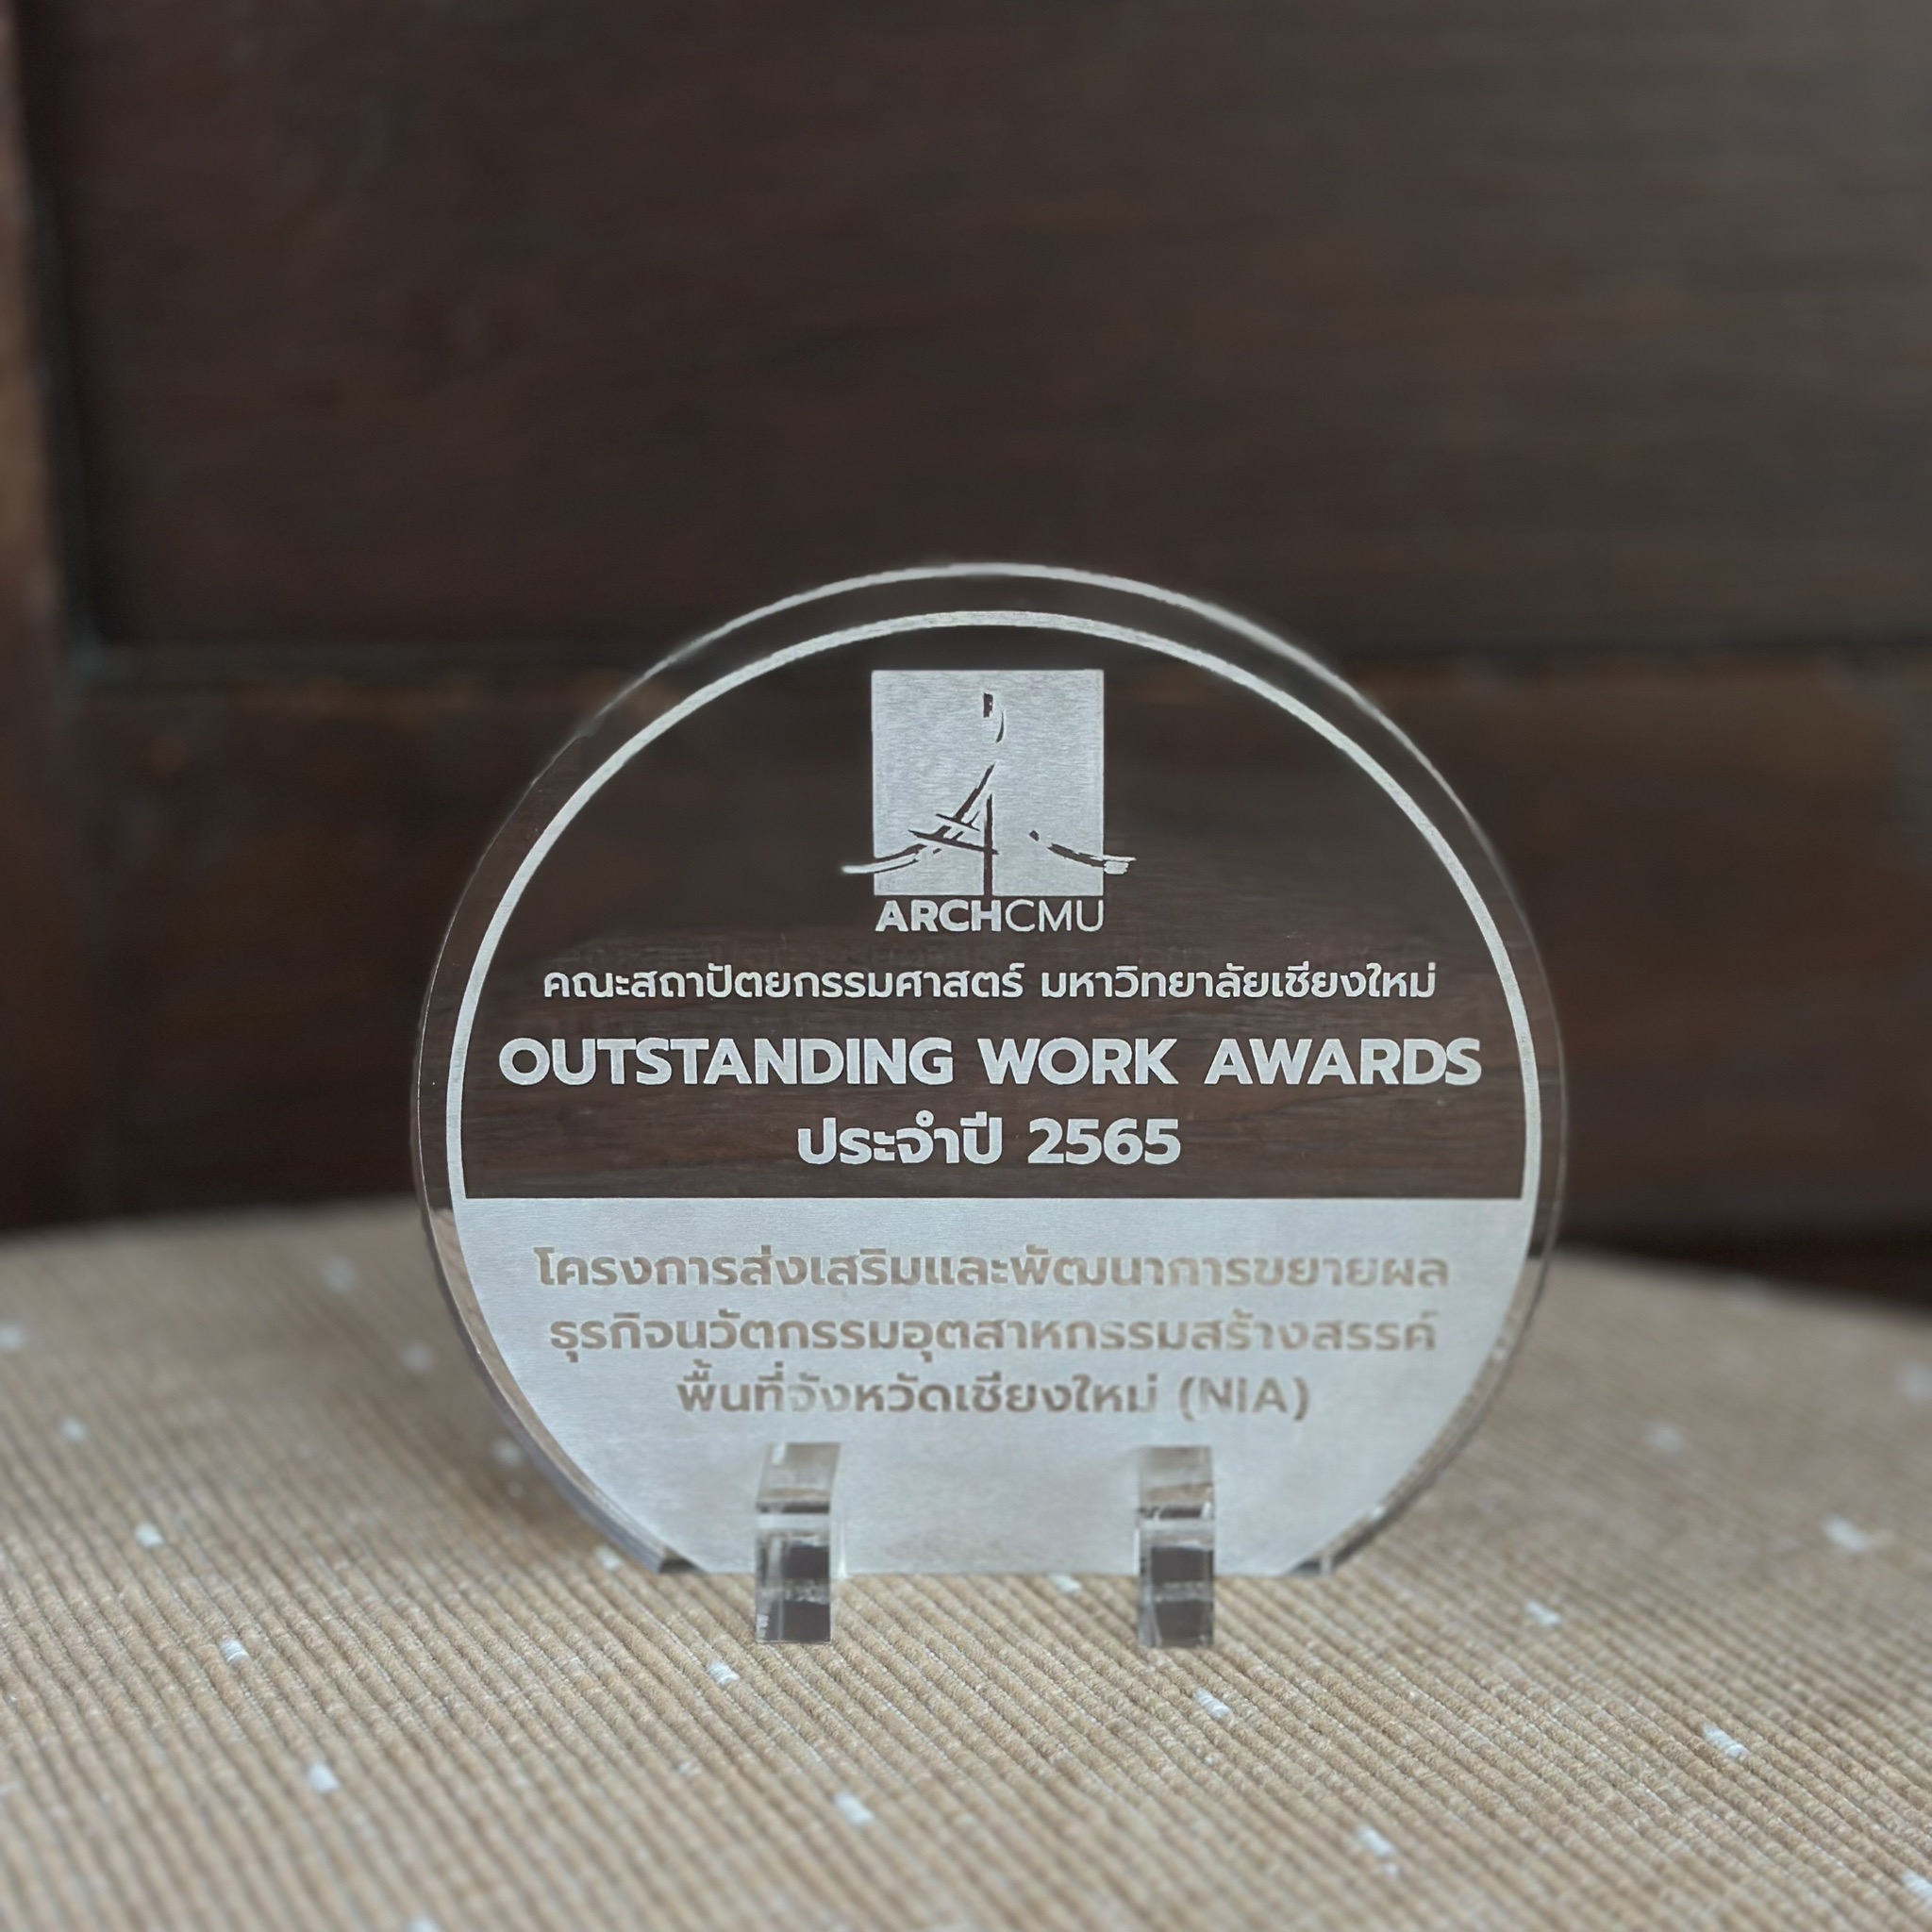 ปี 2566 : รางวัล Outstanding Work Awards ประจำปี 2565 : โครงการส่งเสริมและพัฒนาการขยายผลธุรกิจนวัตกรรมอุตสาหกรรมสร้างสรรค์พื้นที่จังหวัดเชียงใหม่ (NIA) คณะสถาปัตยกรรมศาสตร์ มหาวิทยาลัยเชียงใหม่